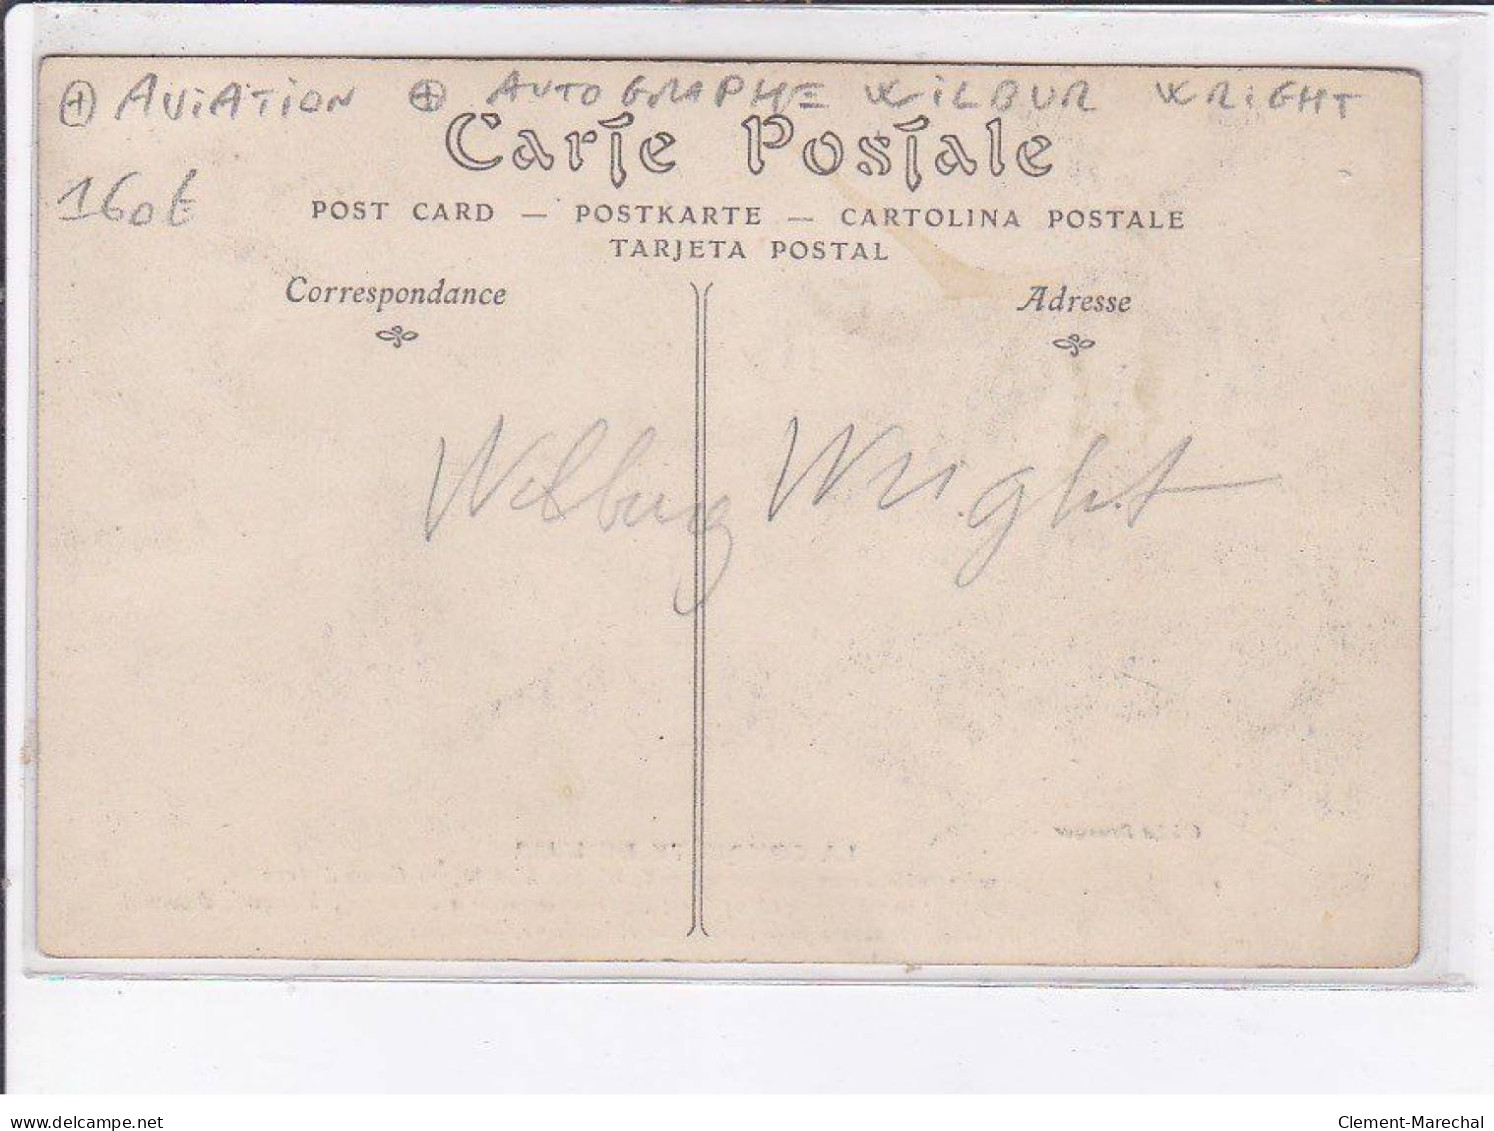 FRANCE: La Conquète De L'air, Wilbur Wright, 1908 Au Camp D'auvour, Aviation, Autographe - Très Bon état - Aviateurs